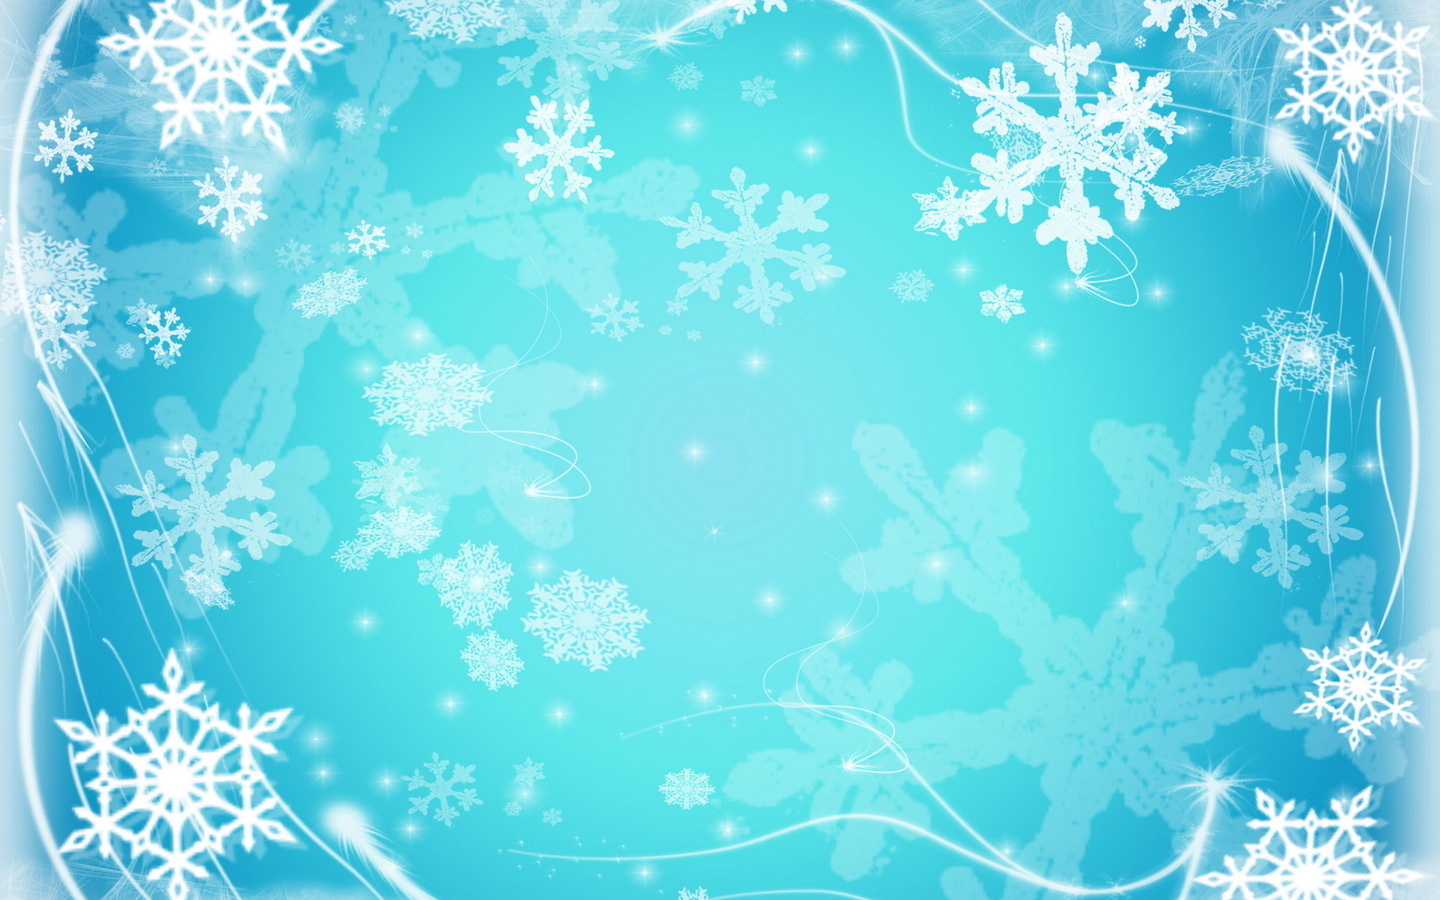 Hd Full Wallpaper Frozen - Frozen Background - HD Wallpaper 